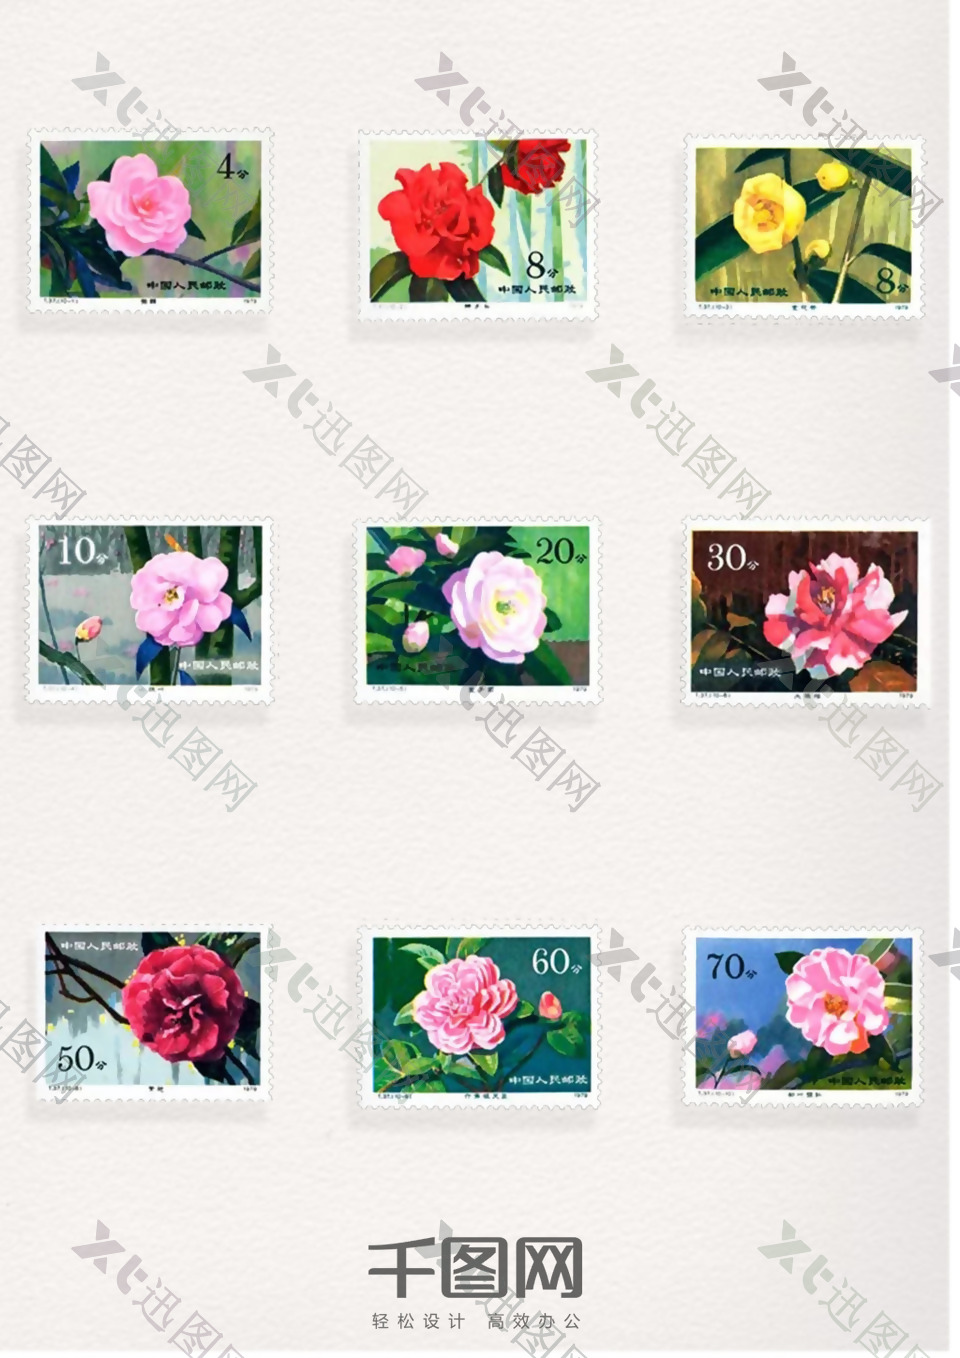 蔷薇图案邮票元素装饰